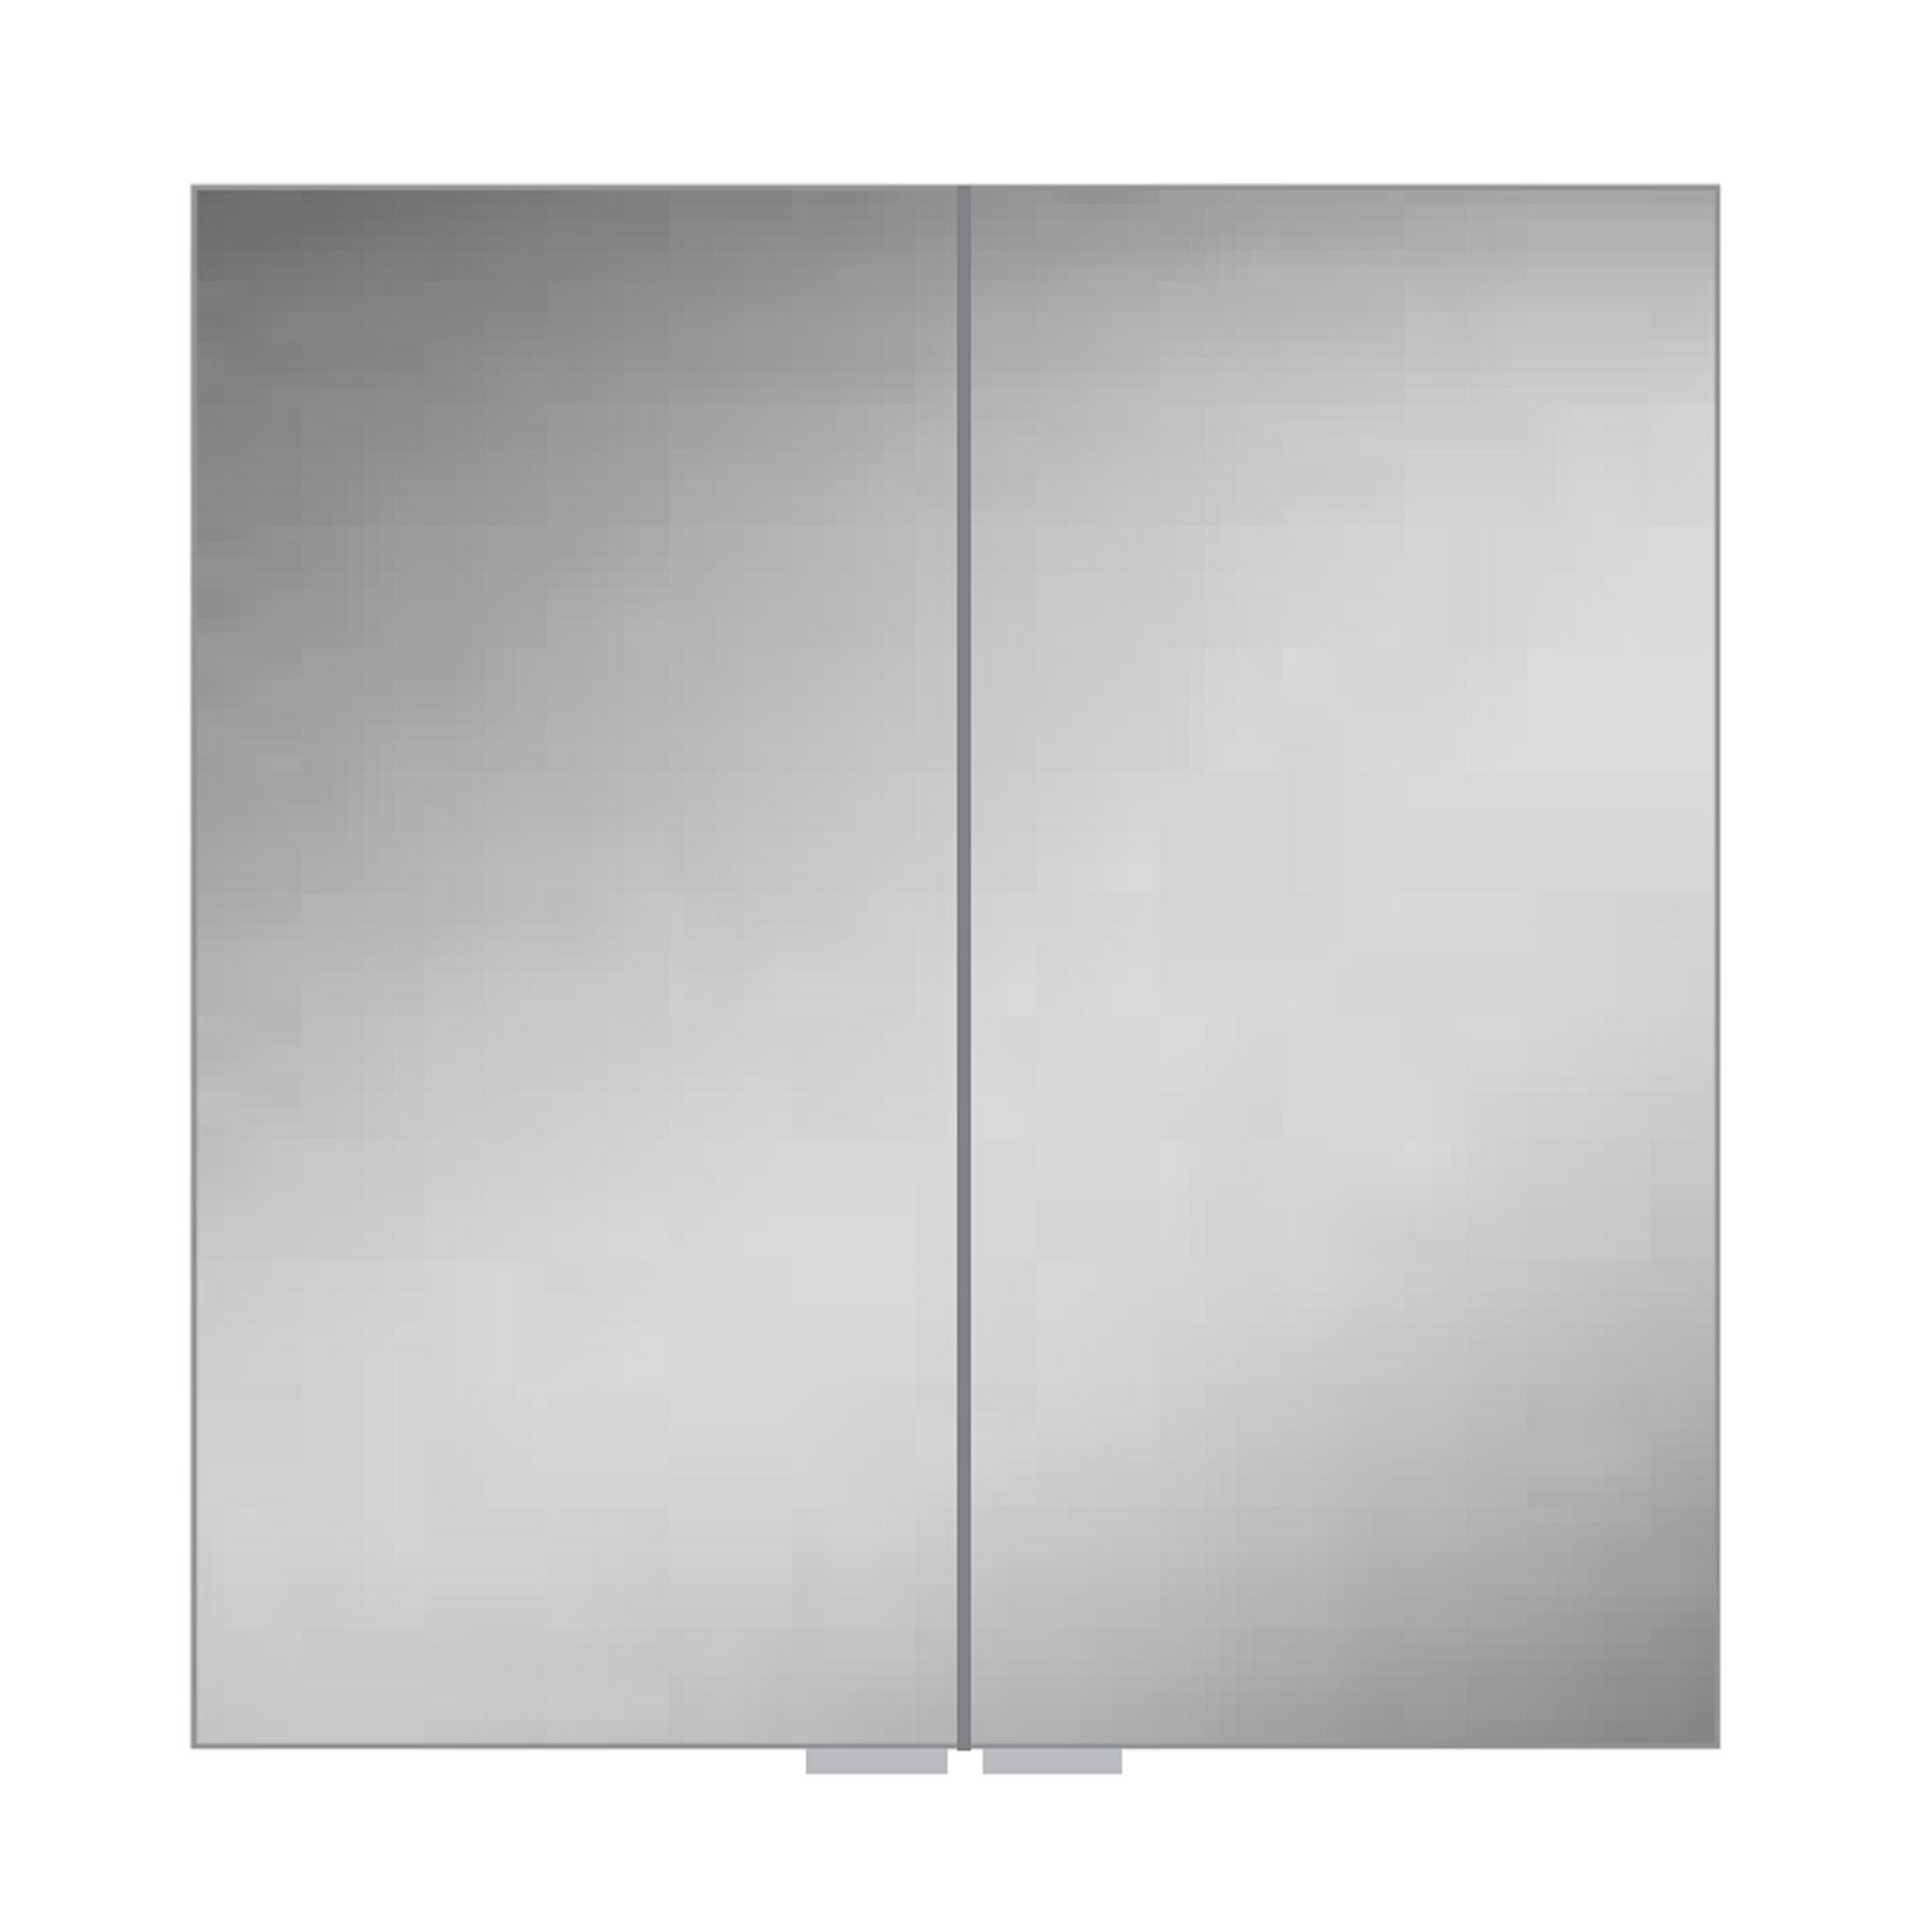 HiB Eris 80 Aluminium Mirror Cabinet 80 x 70cm